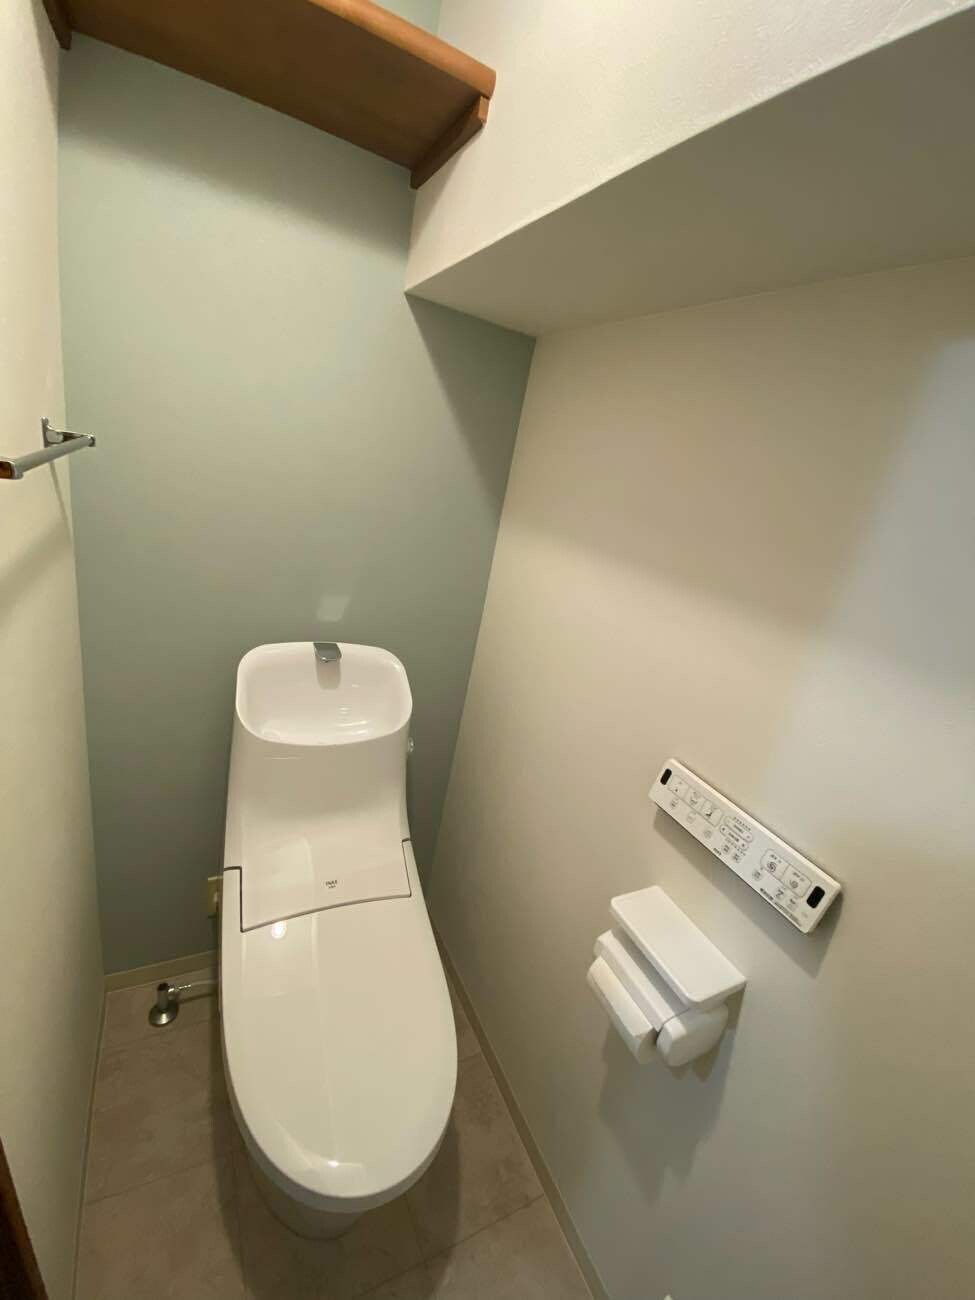 タンク一体型のトイレでお掃除も楽々　壁リモコンですっきり